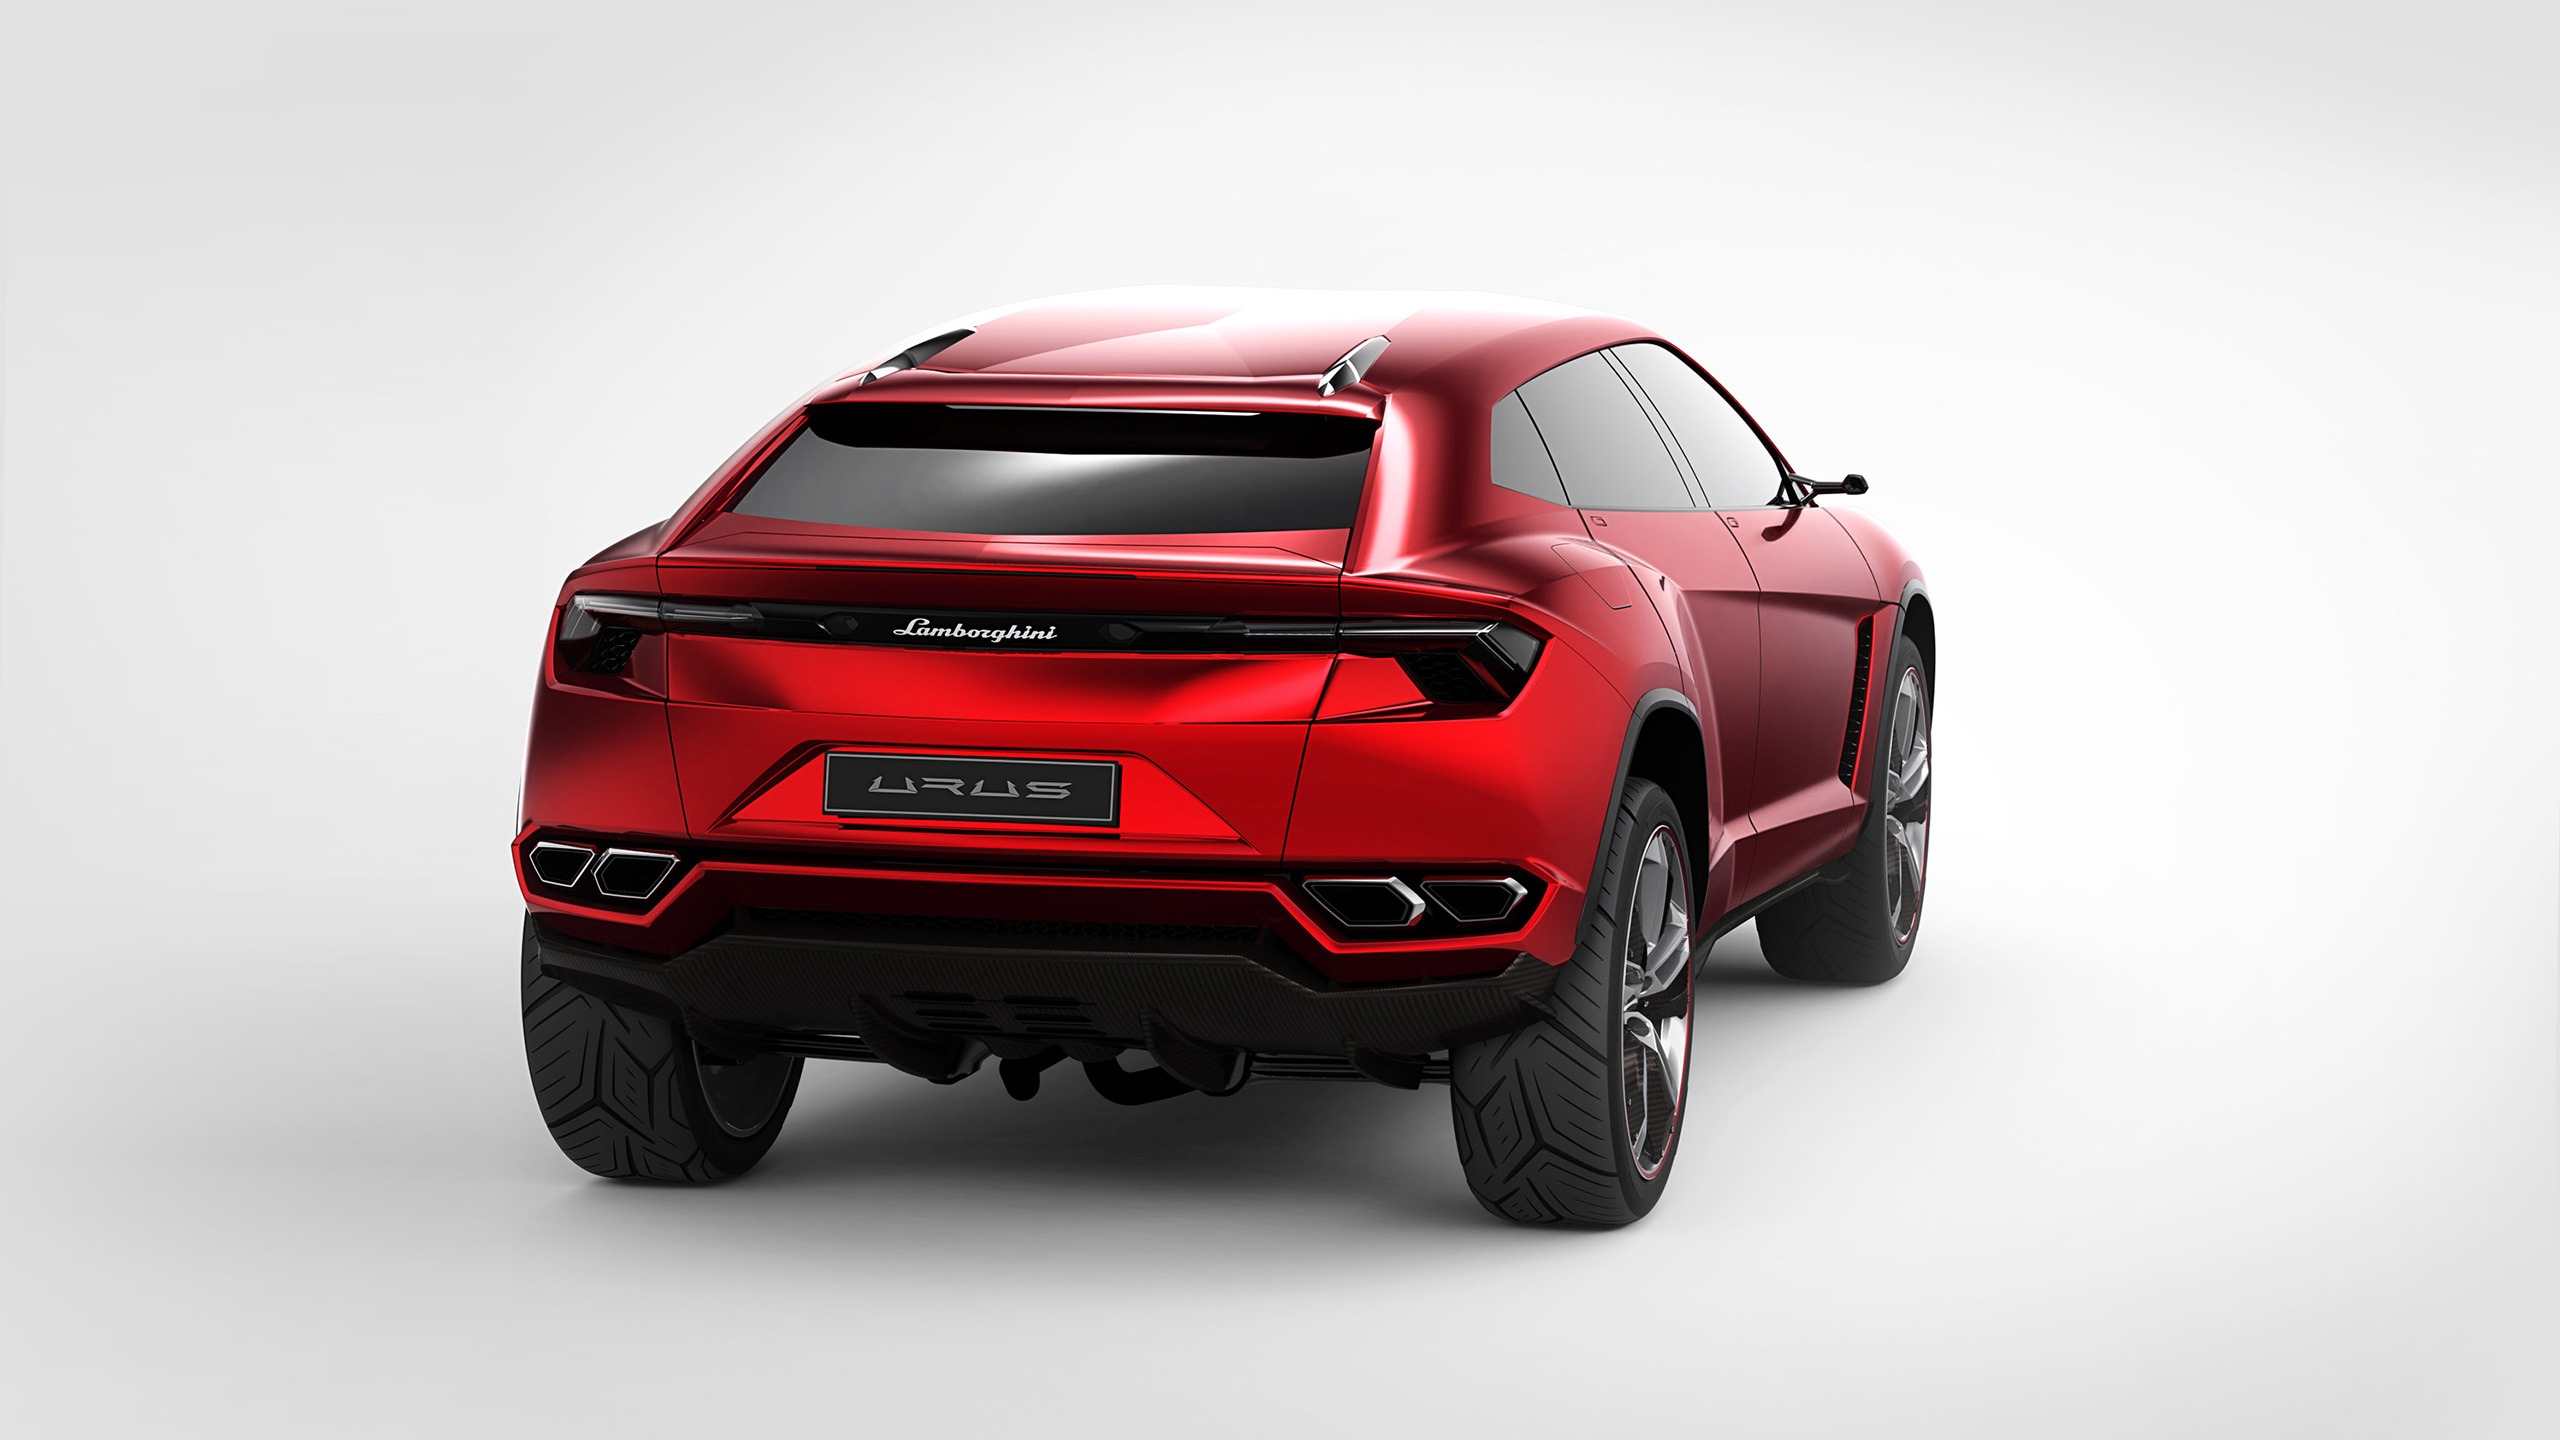 Lamborghini Urus Concept Rear Studio for 2560x1440 HDTV resolution